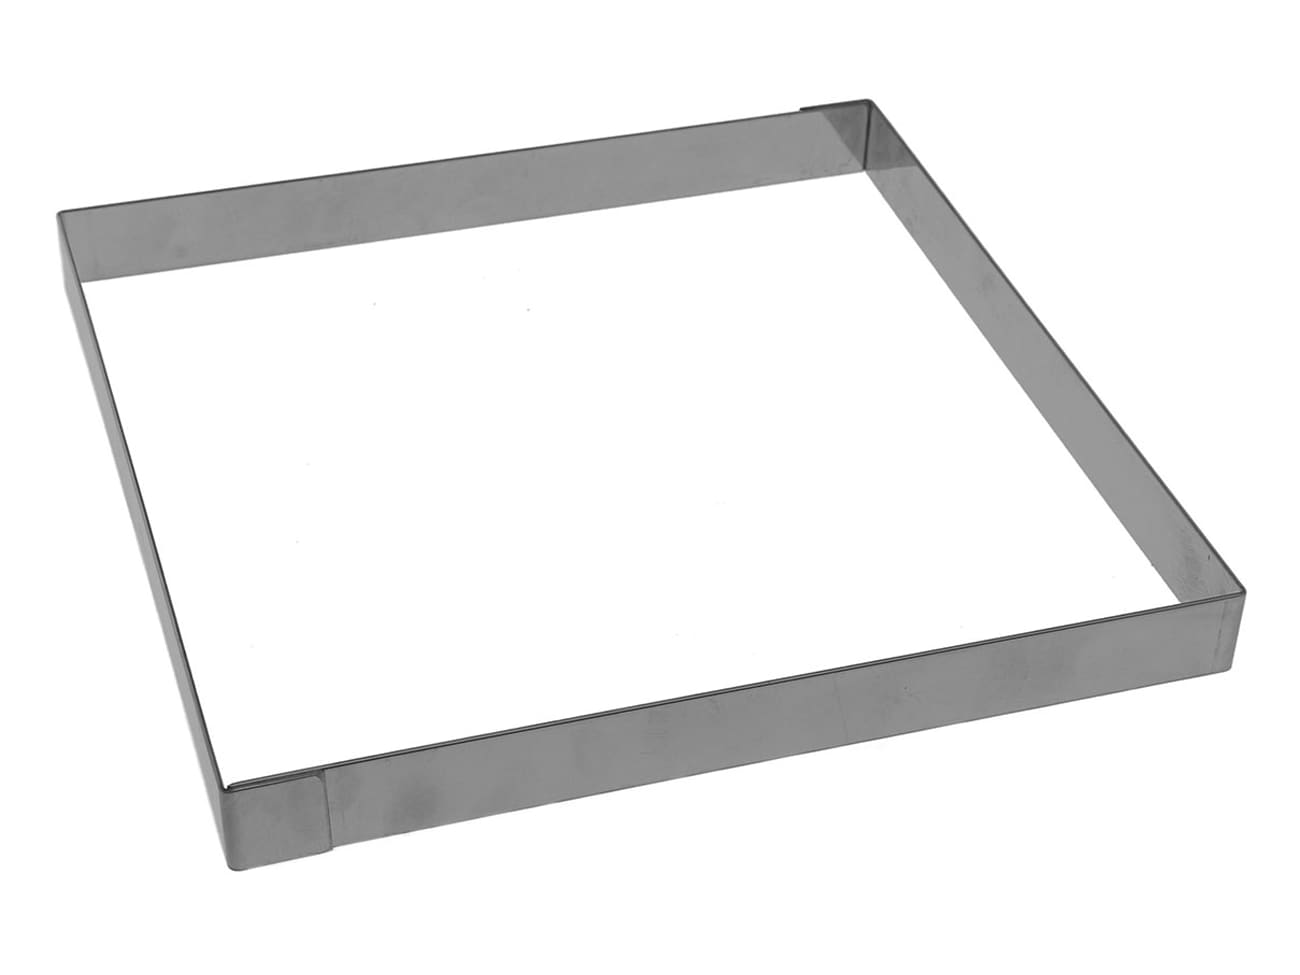 Cornice quadrata per crostata in acciaio inox - bordo dritto - 24 x 24 x h  2 cm - Mallard Ferrière - Meilleur du Chef